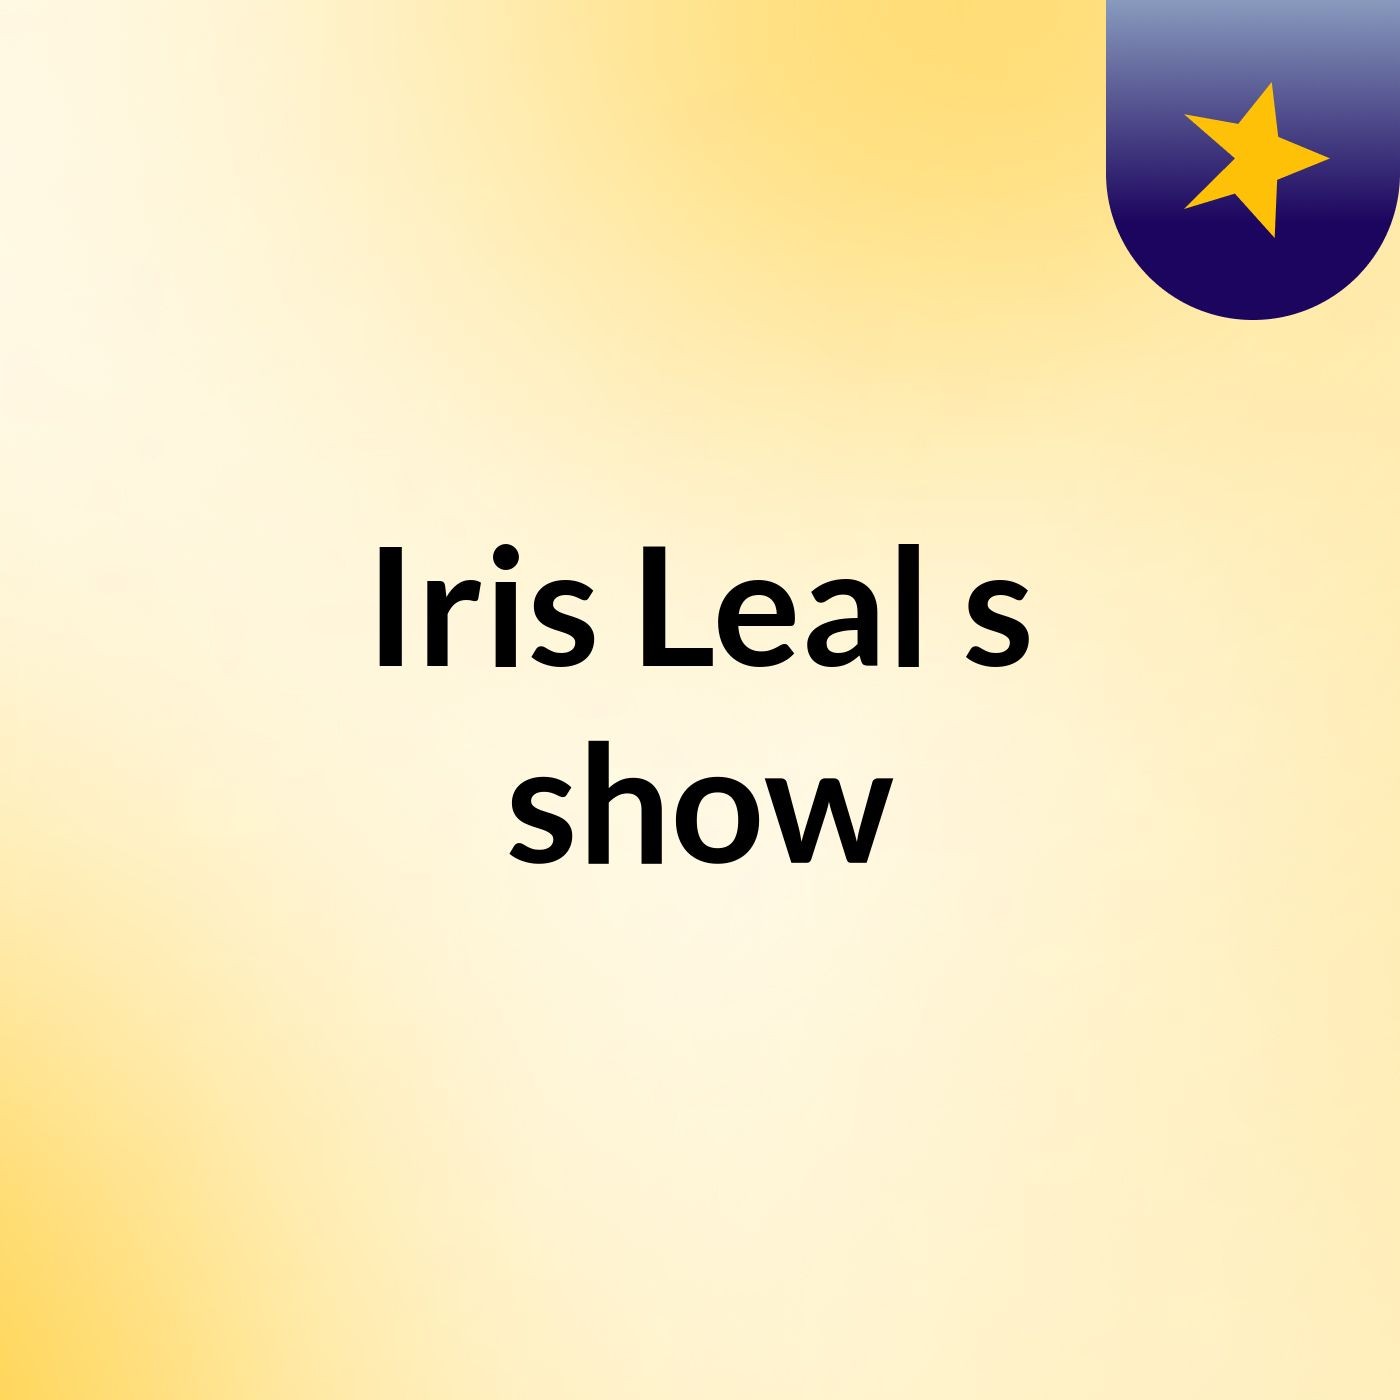 Iris Leal's show